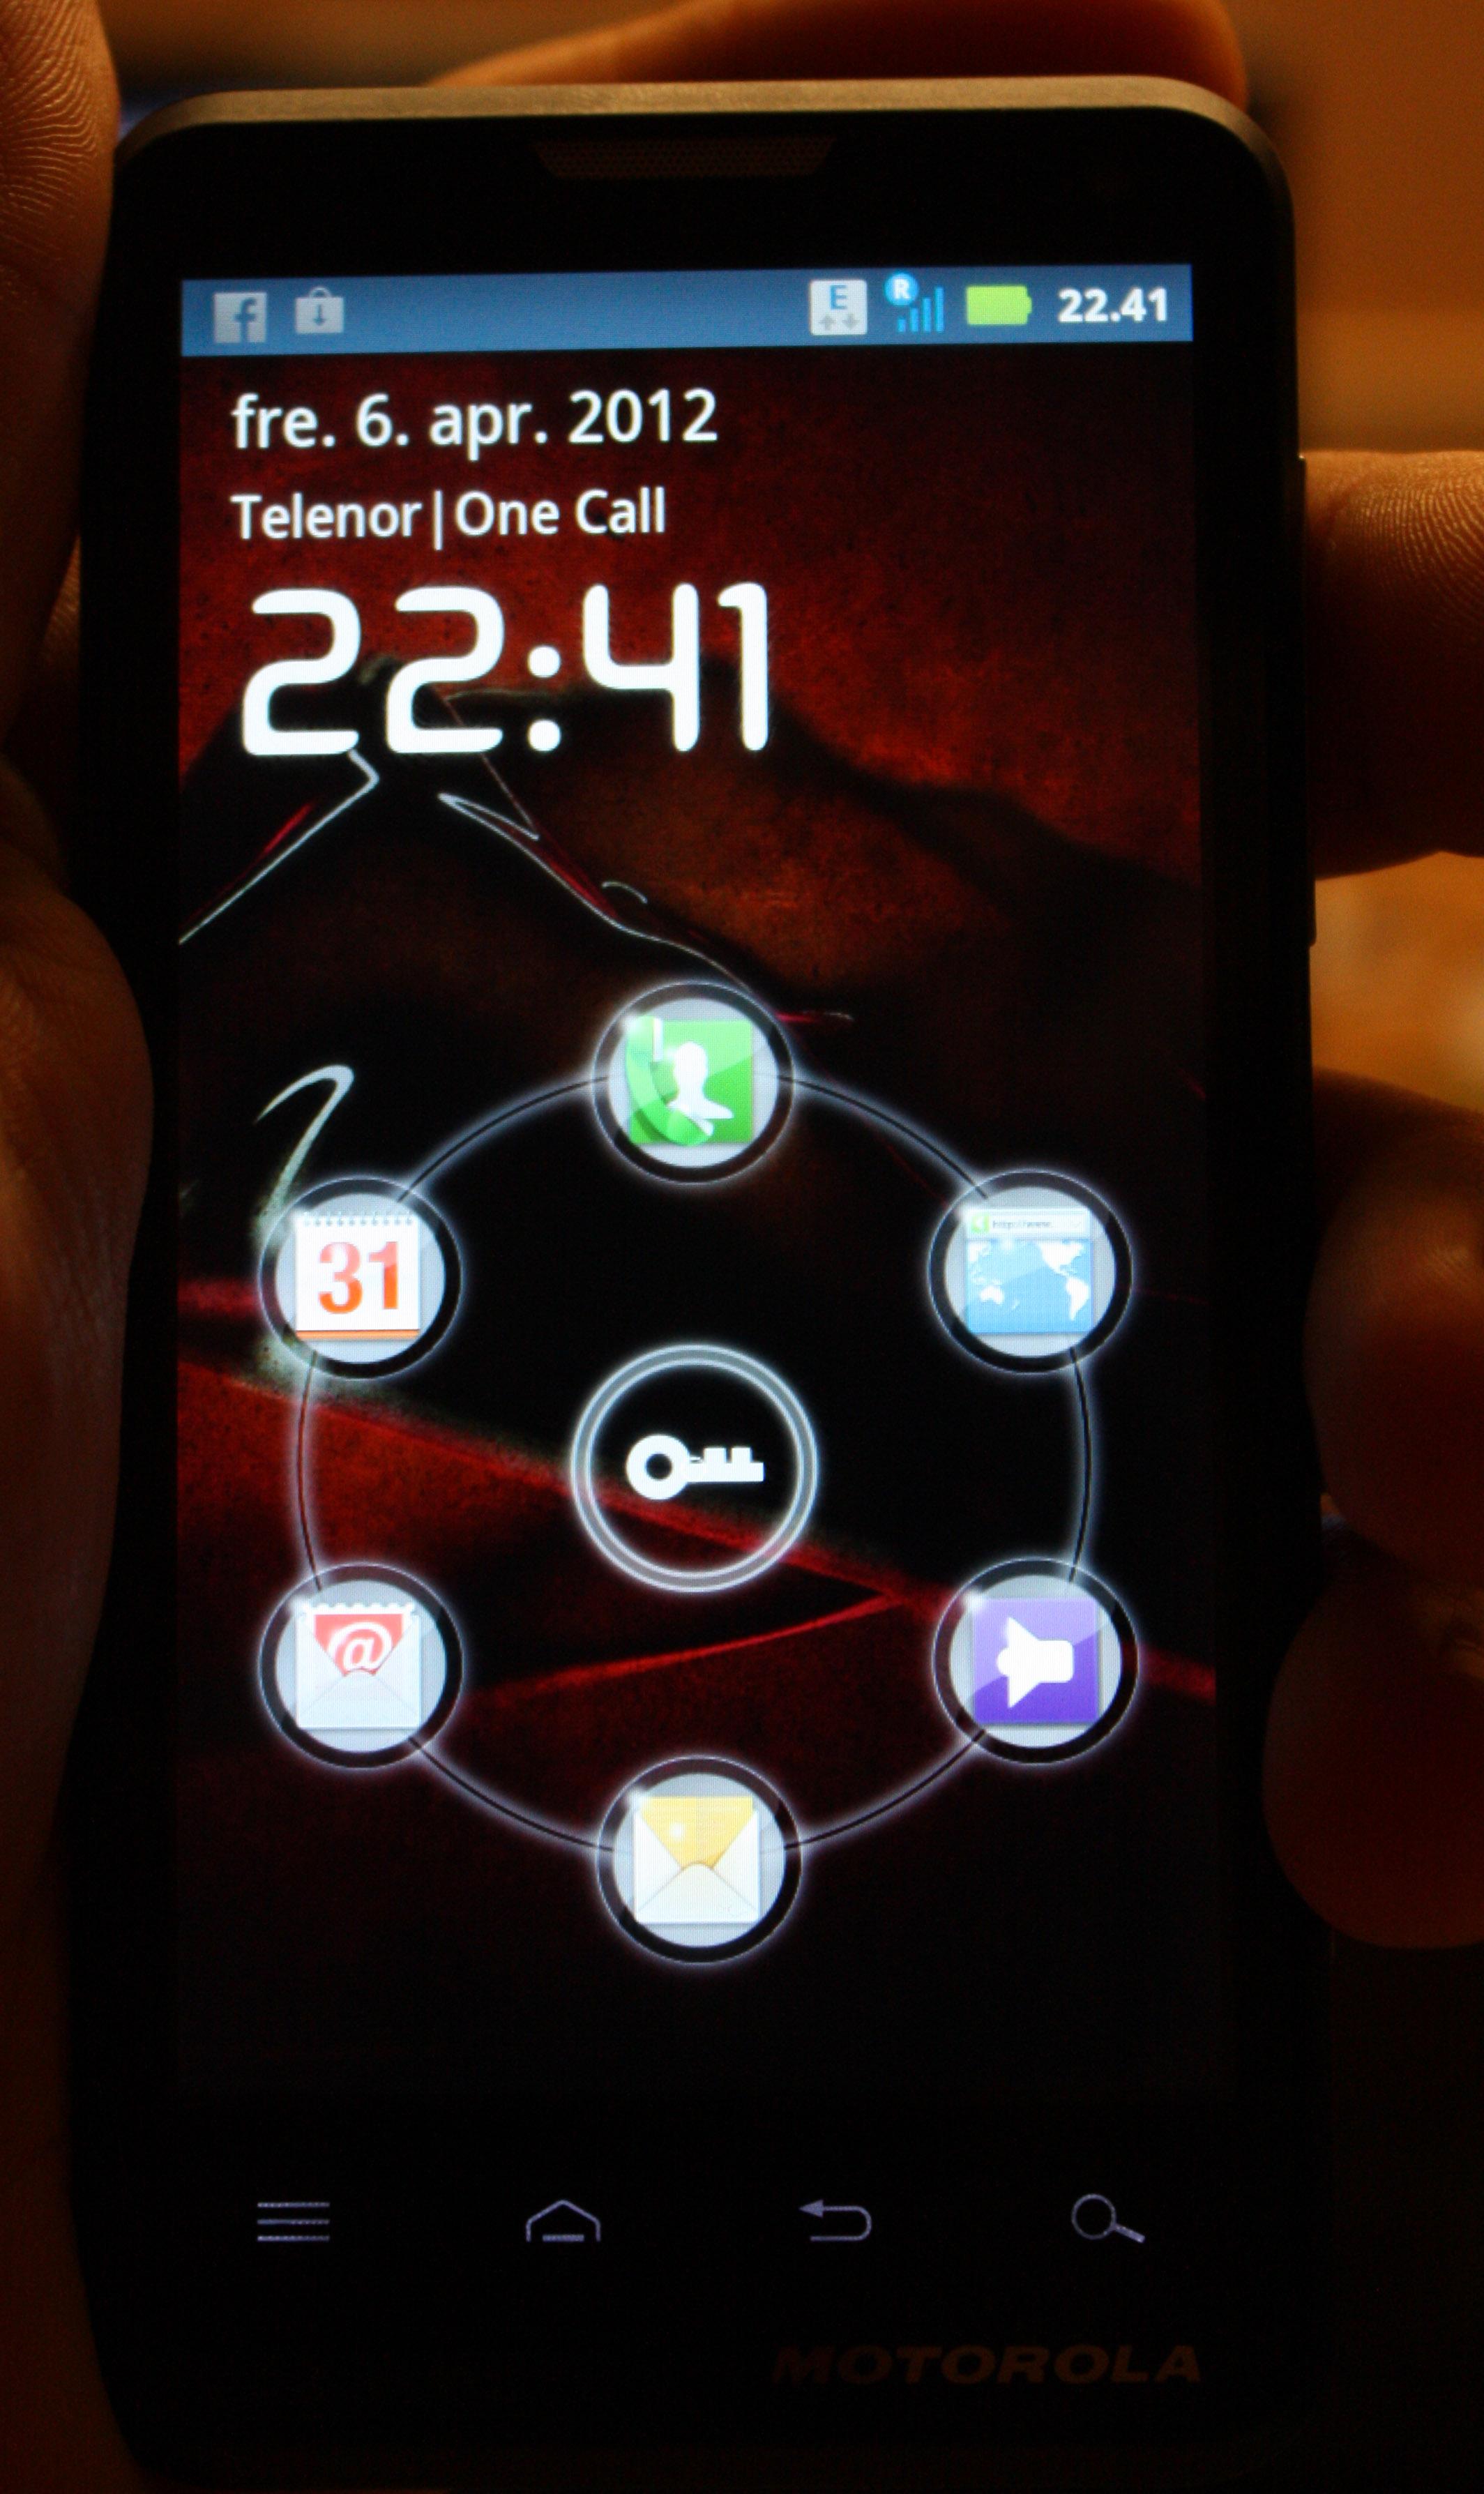 Motolux har en smart startside når du skal låse opp telefonen.